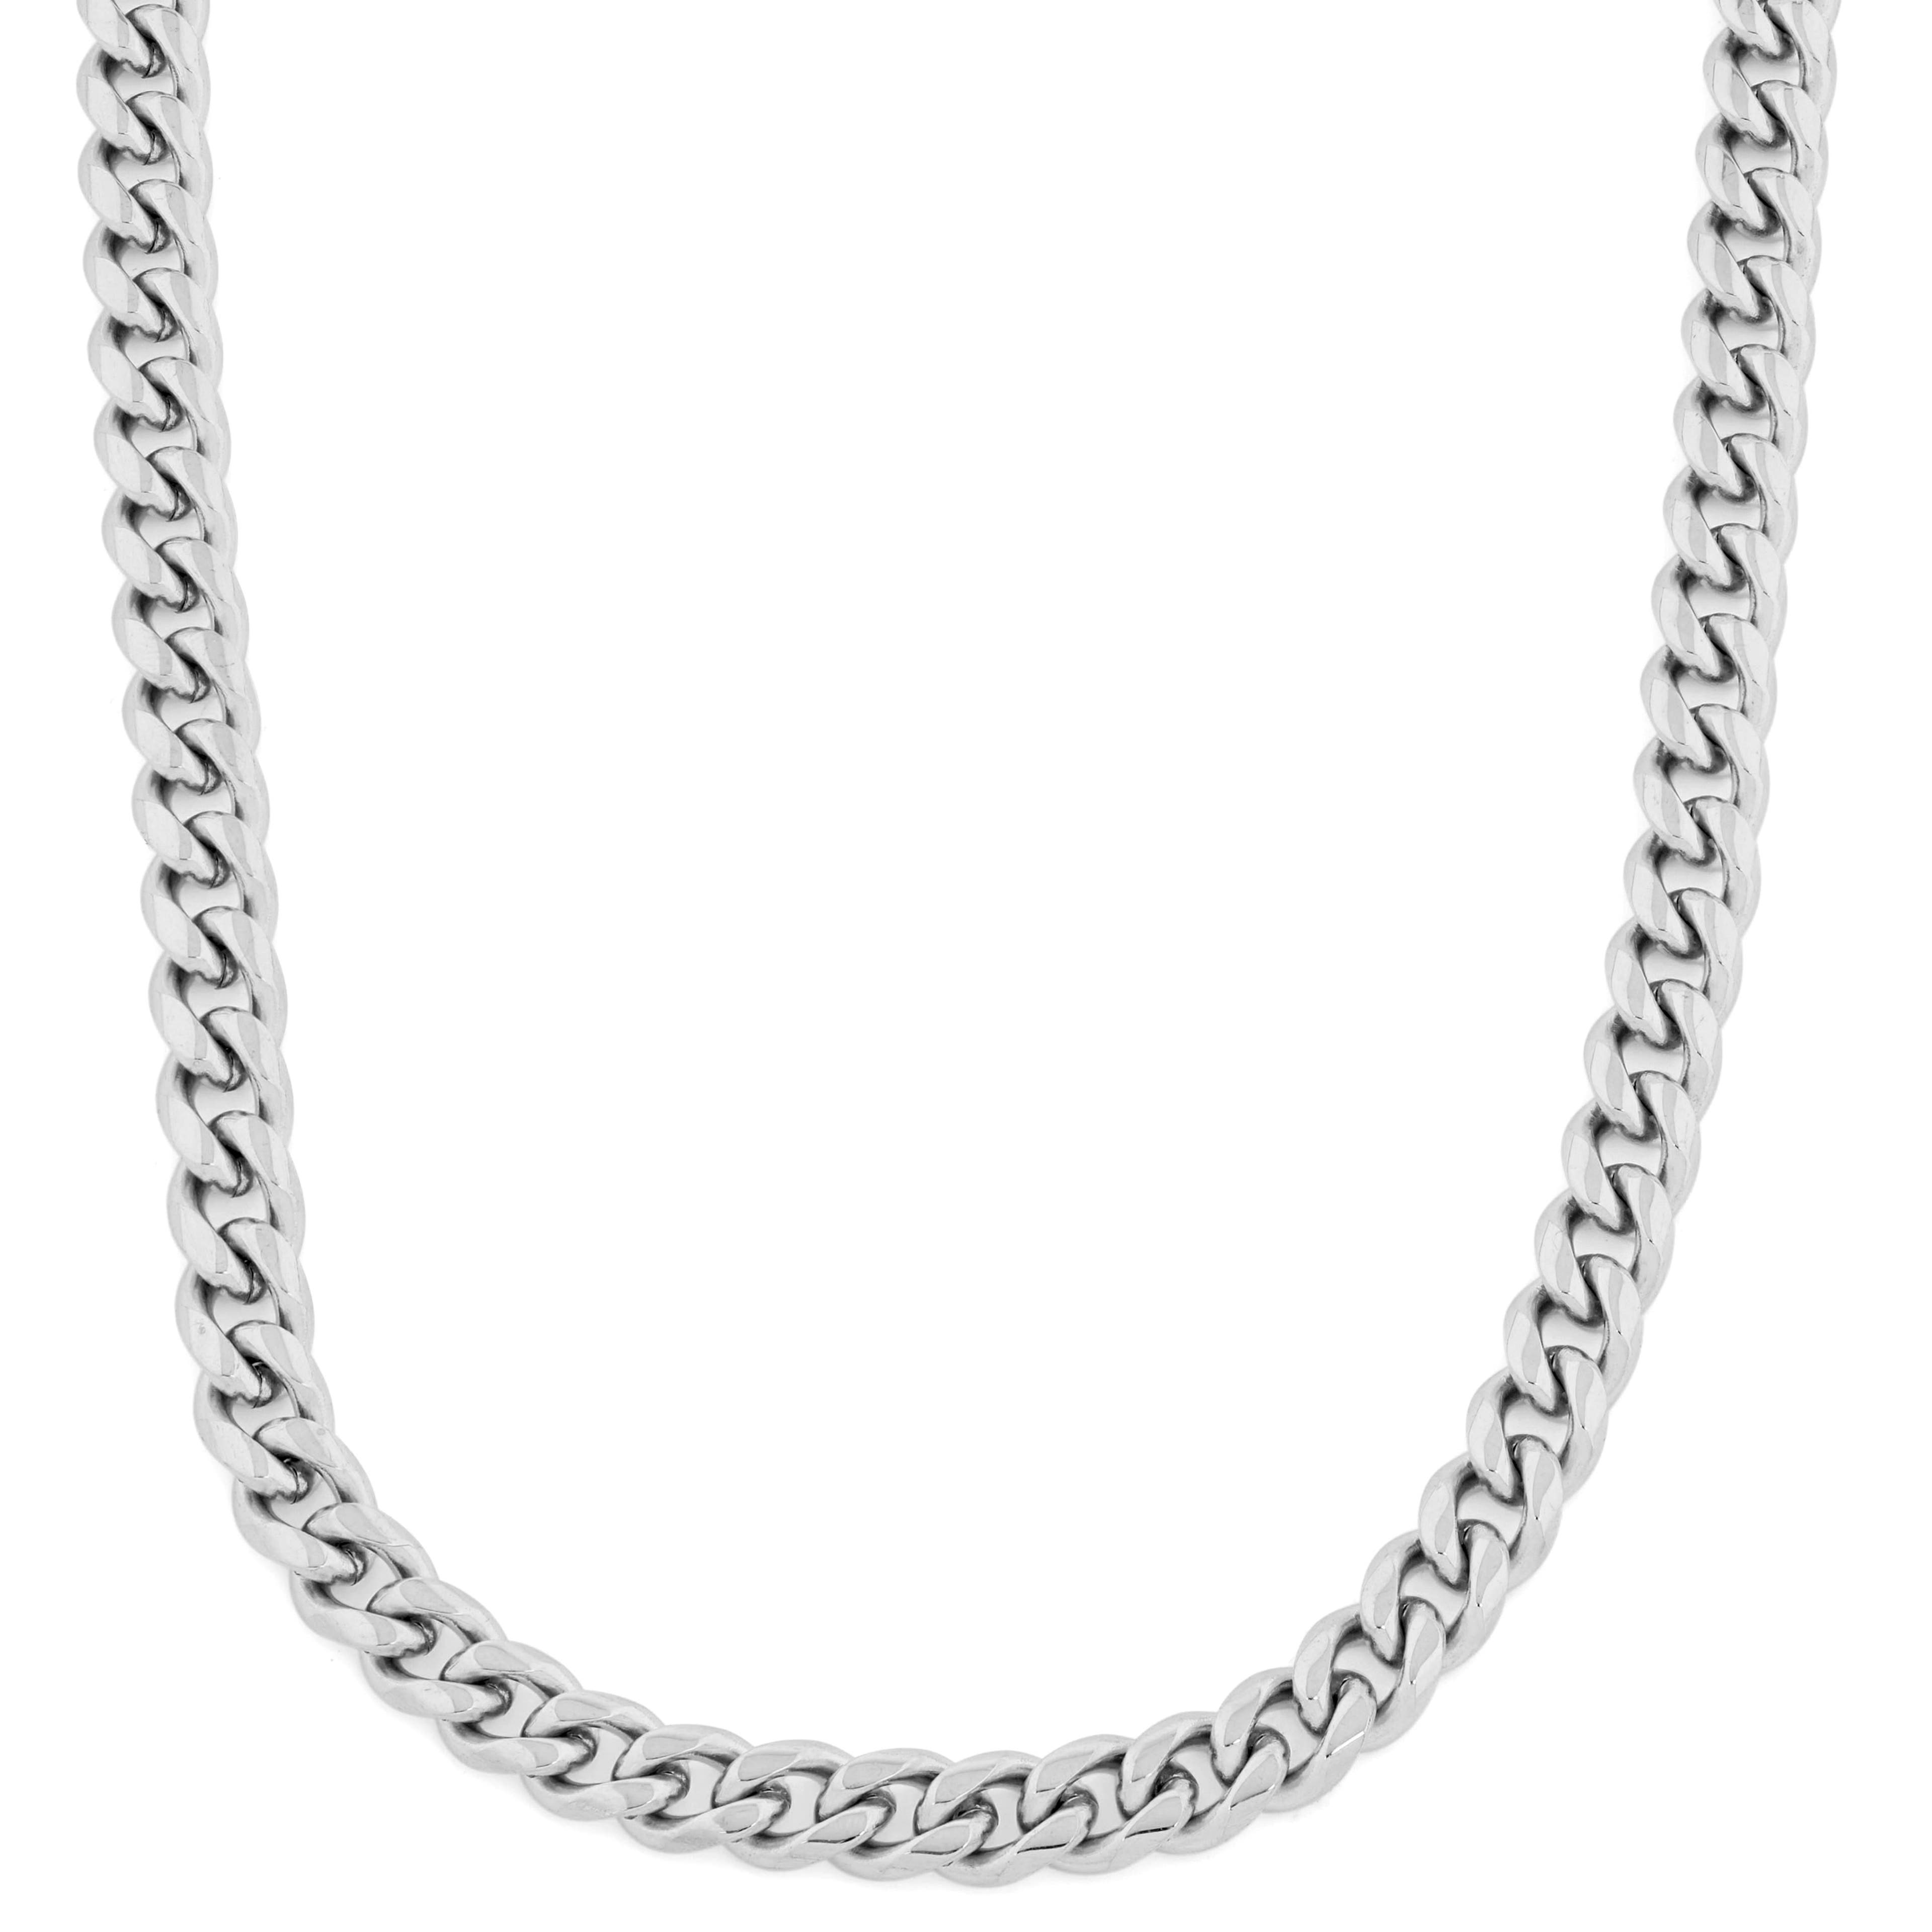 10mm řetízkový náhrdelník ve stříbrné barvě